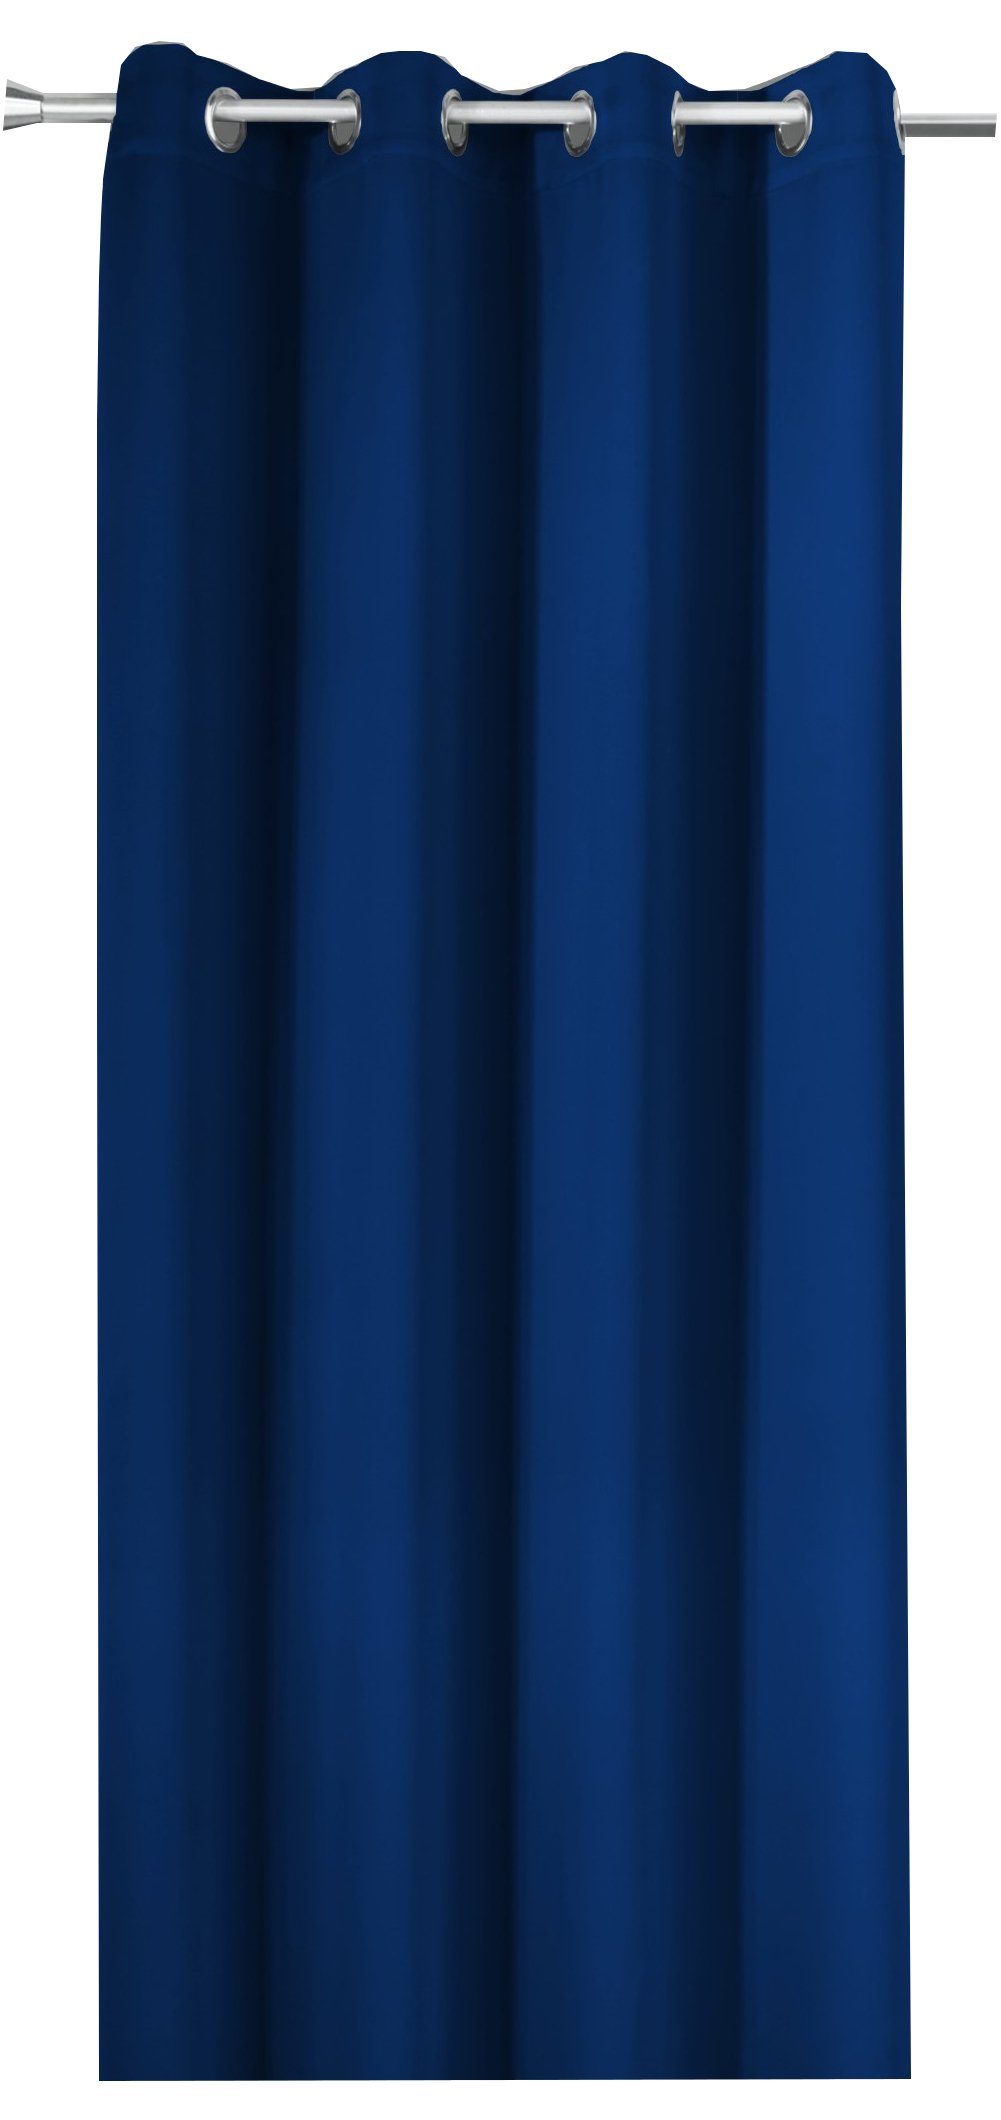 Thermoeffekt, Maß cm novumfix, Verdunkelungsvorhang nach mit lang, Verdunkelung Vorhang ÖSEN XXL Energiesparen, bis 350 marine-blau verdunkelnd,